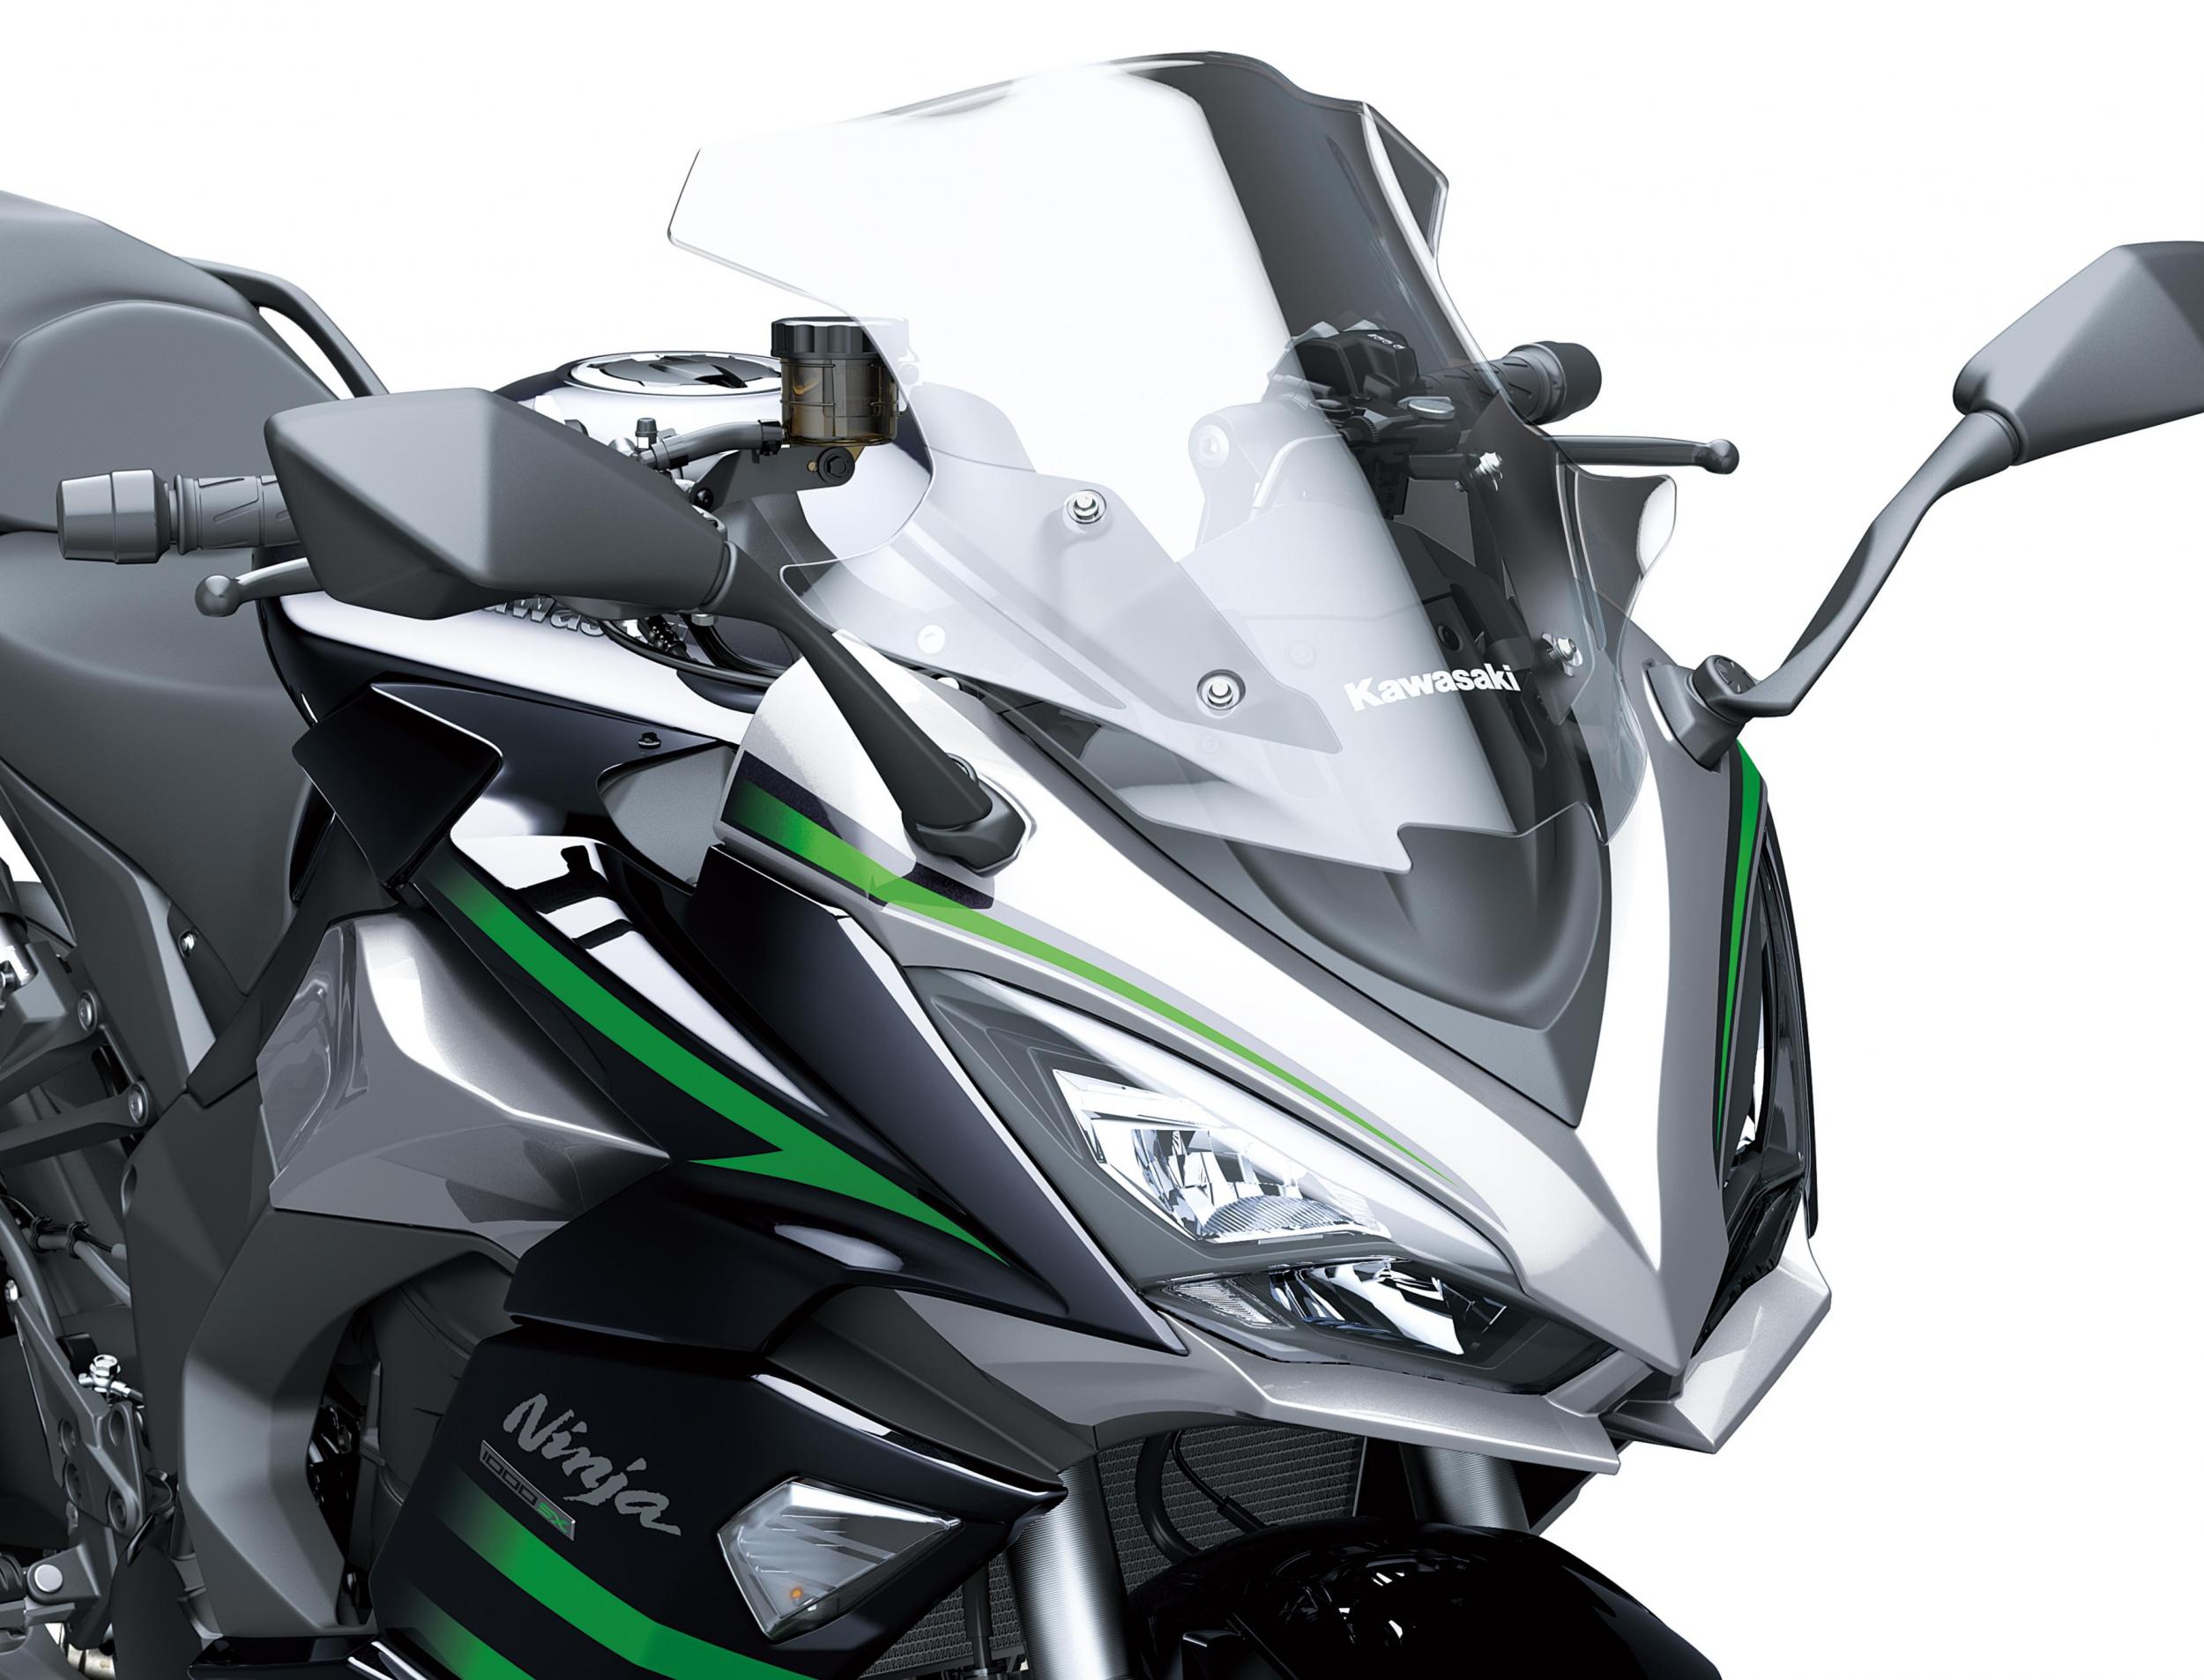 Kawasaki Ninja 1000sx Motorbikes For Sale The Bike Market